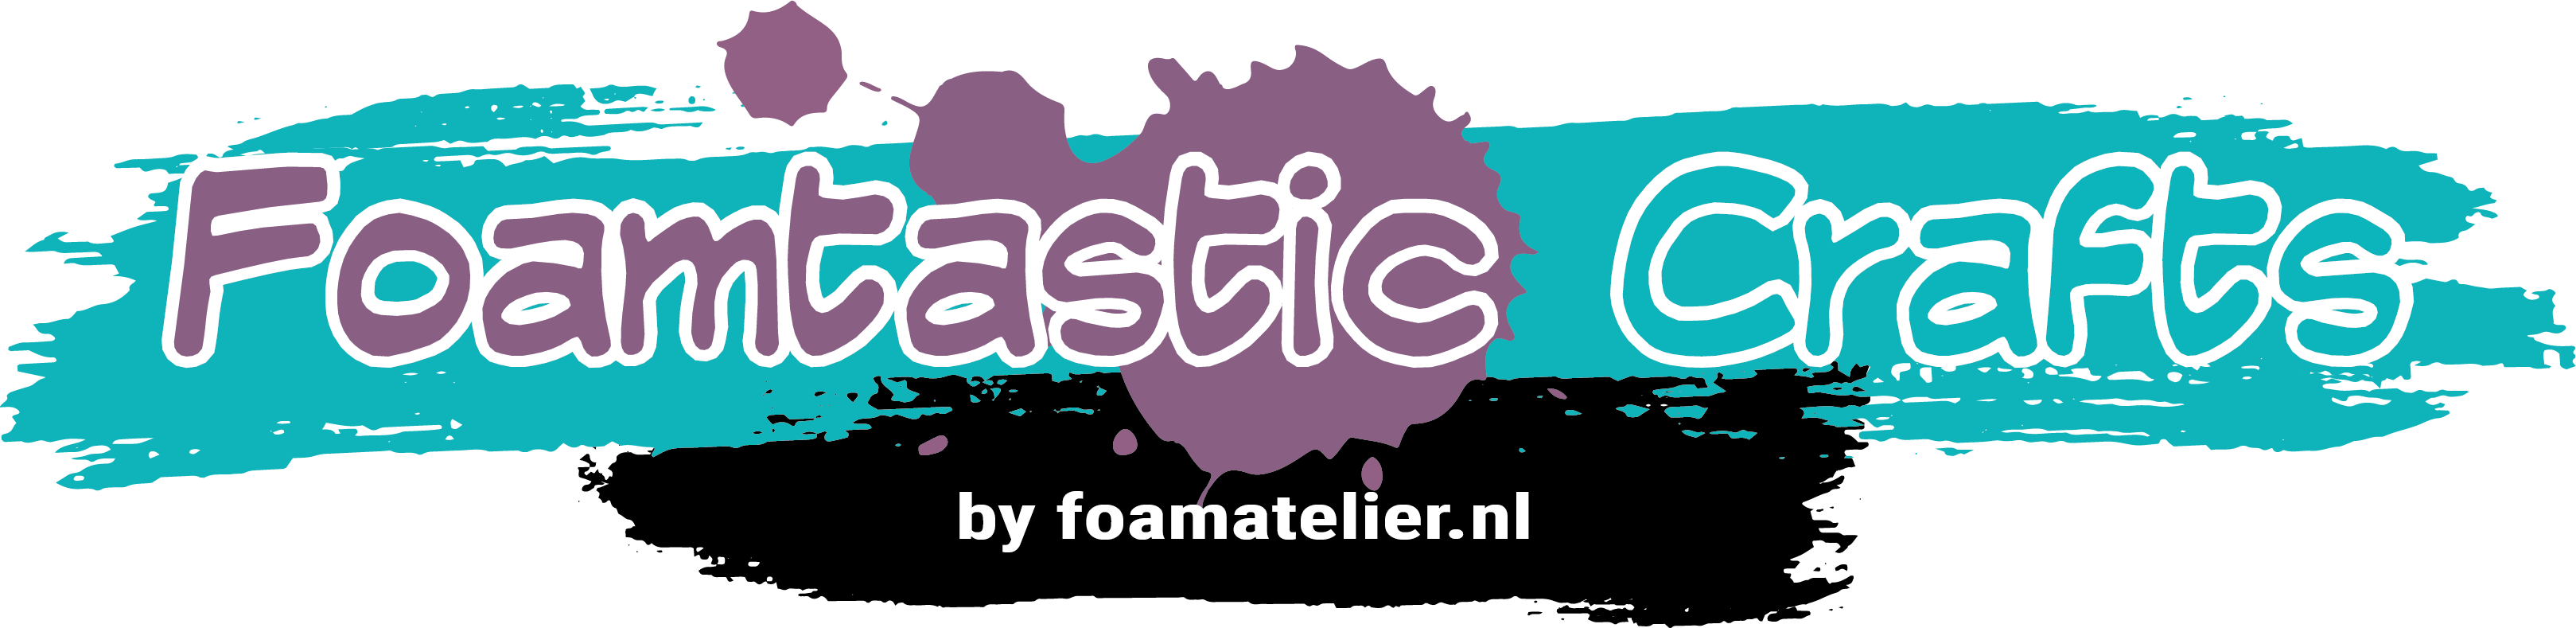 Logo Foamtastic Crafts by foamatelier